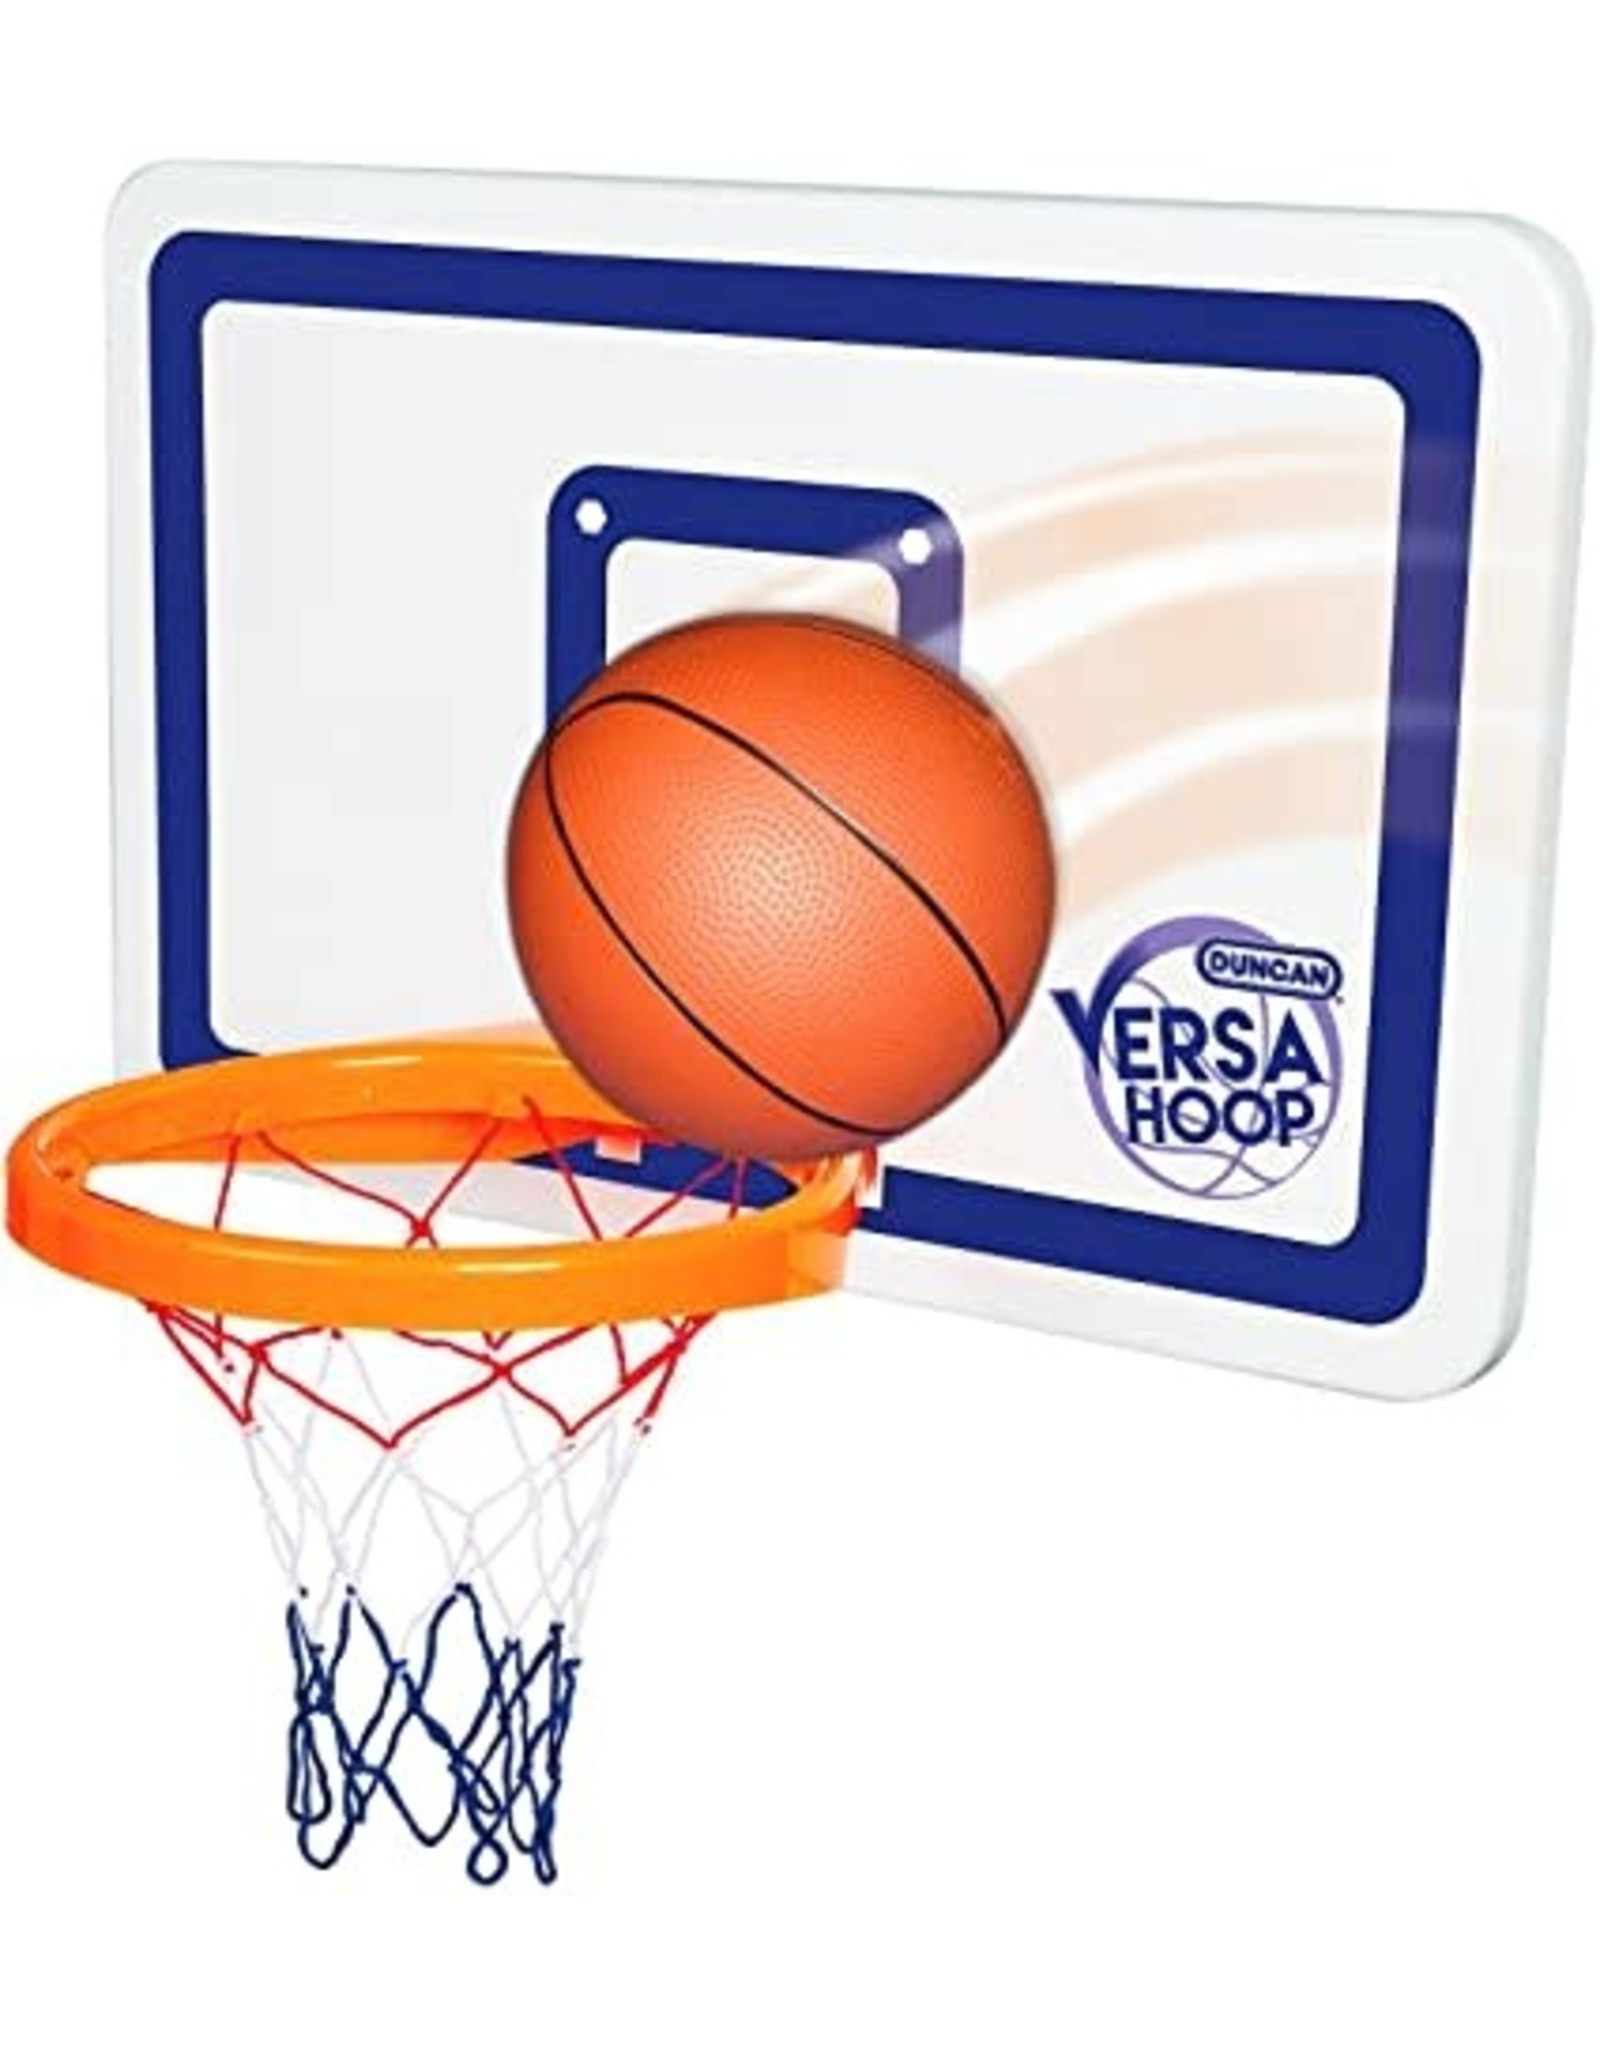 Duncan Versa Hoop Basketball Set